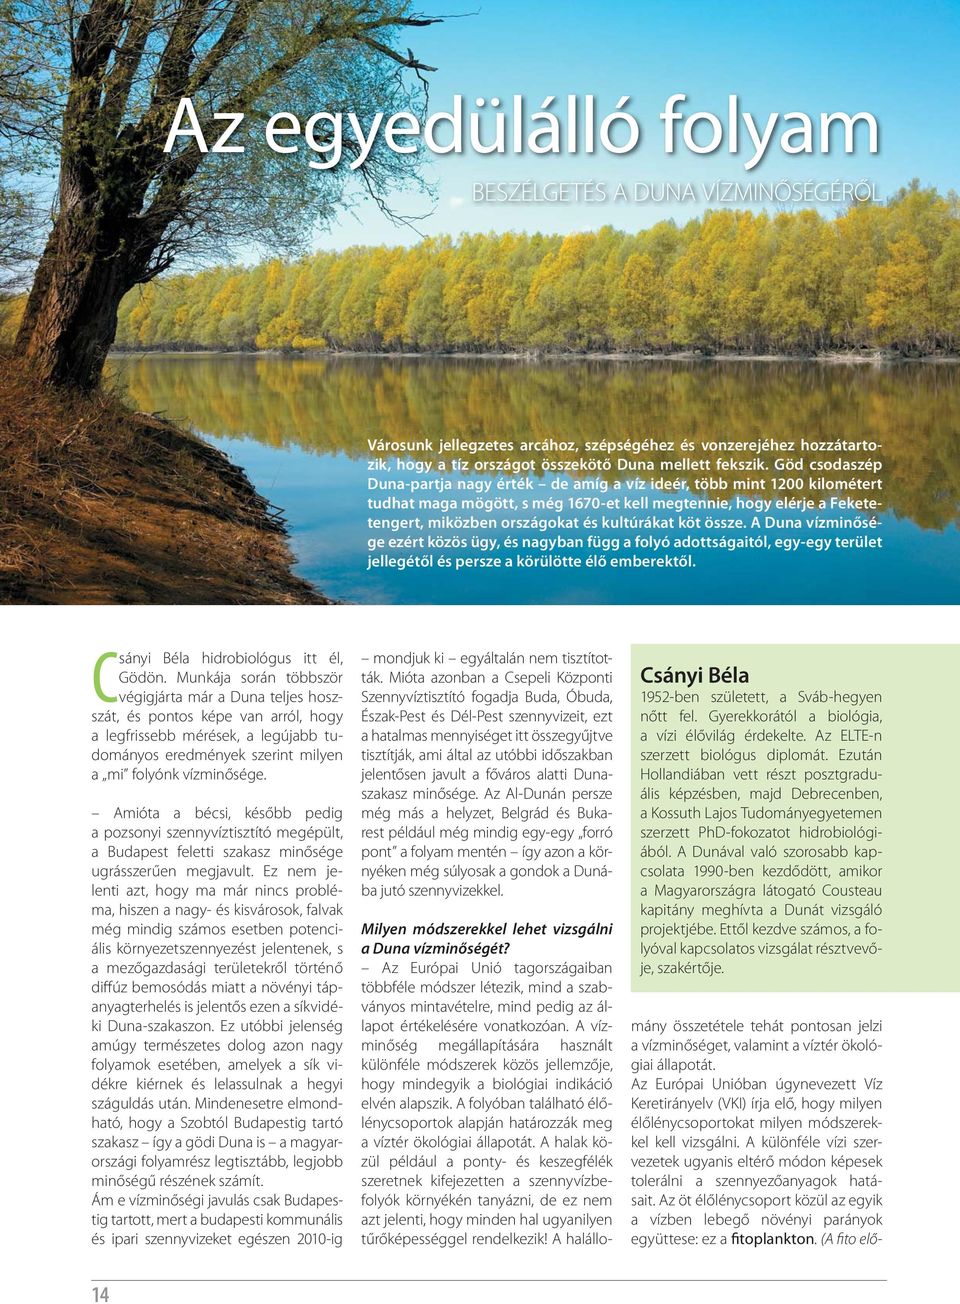 köt össze. A Duna vízminősége ezért közös ügy, és nagyban függ a folyó adottságaitól, egy-egy terület jellegétől és persze a körülötte élő emberektől. Csányi Béla hidrobiológus itt él, Gödön.